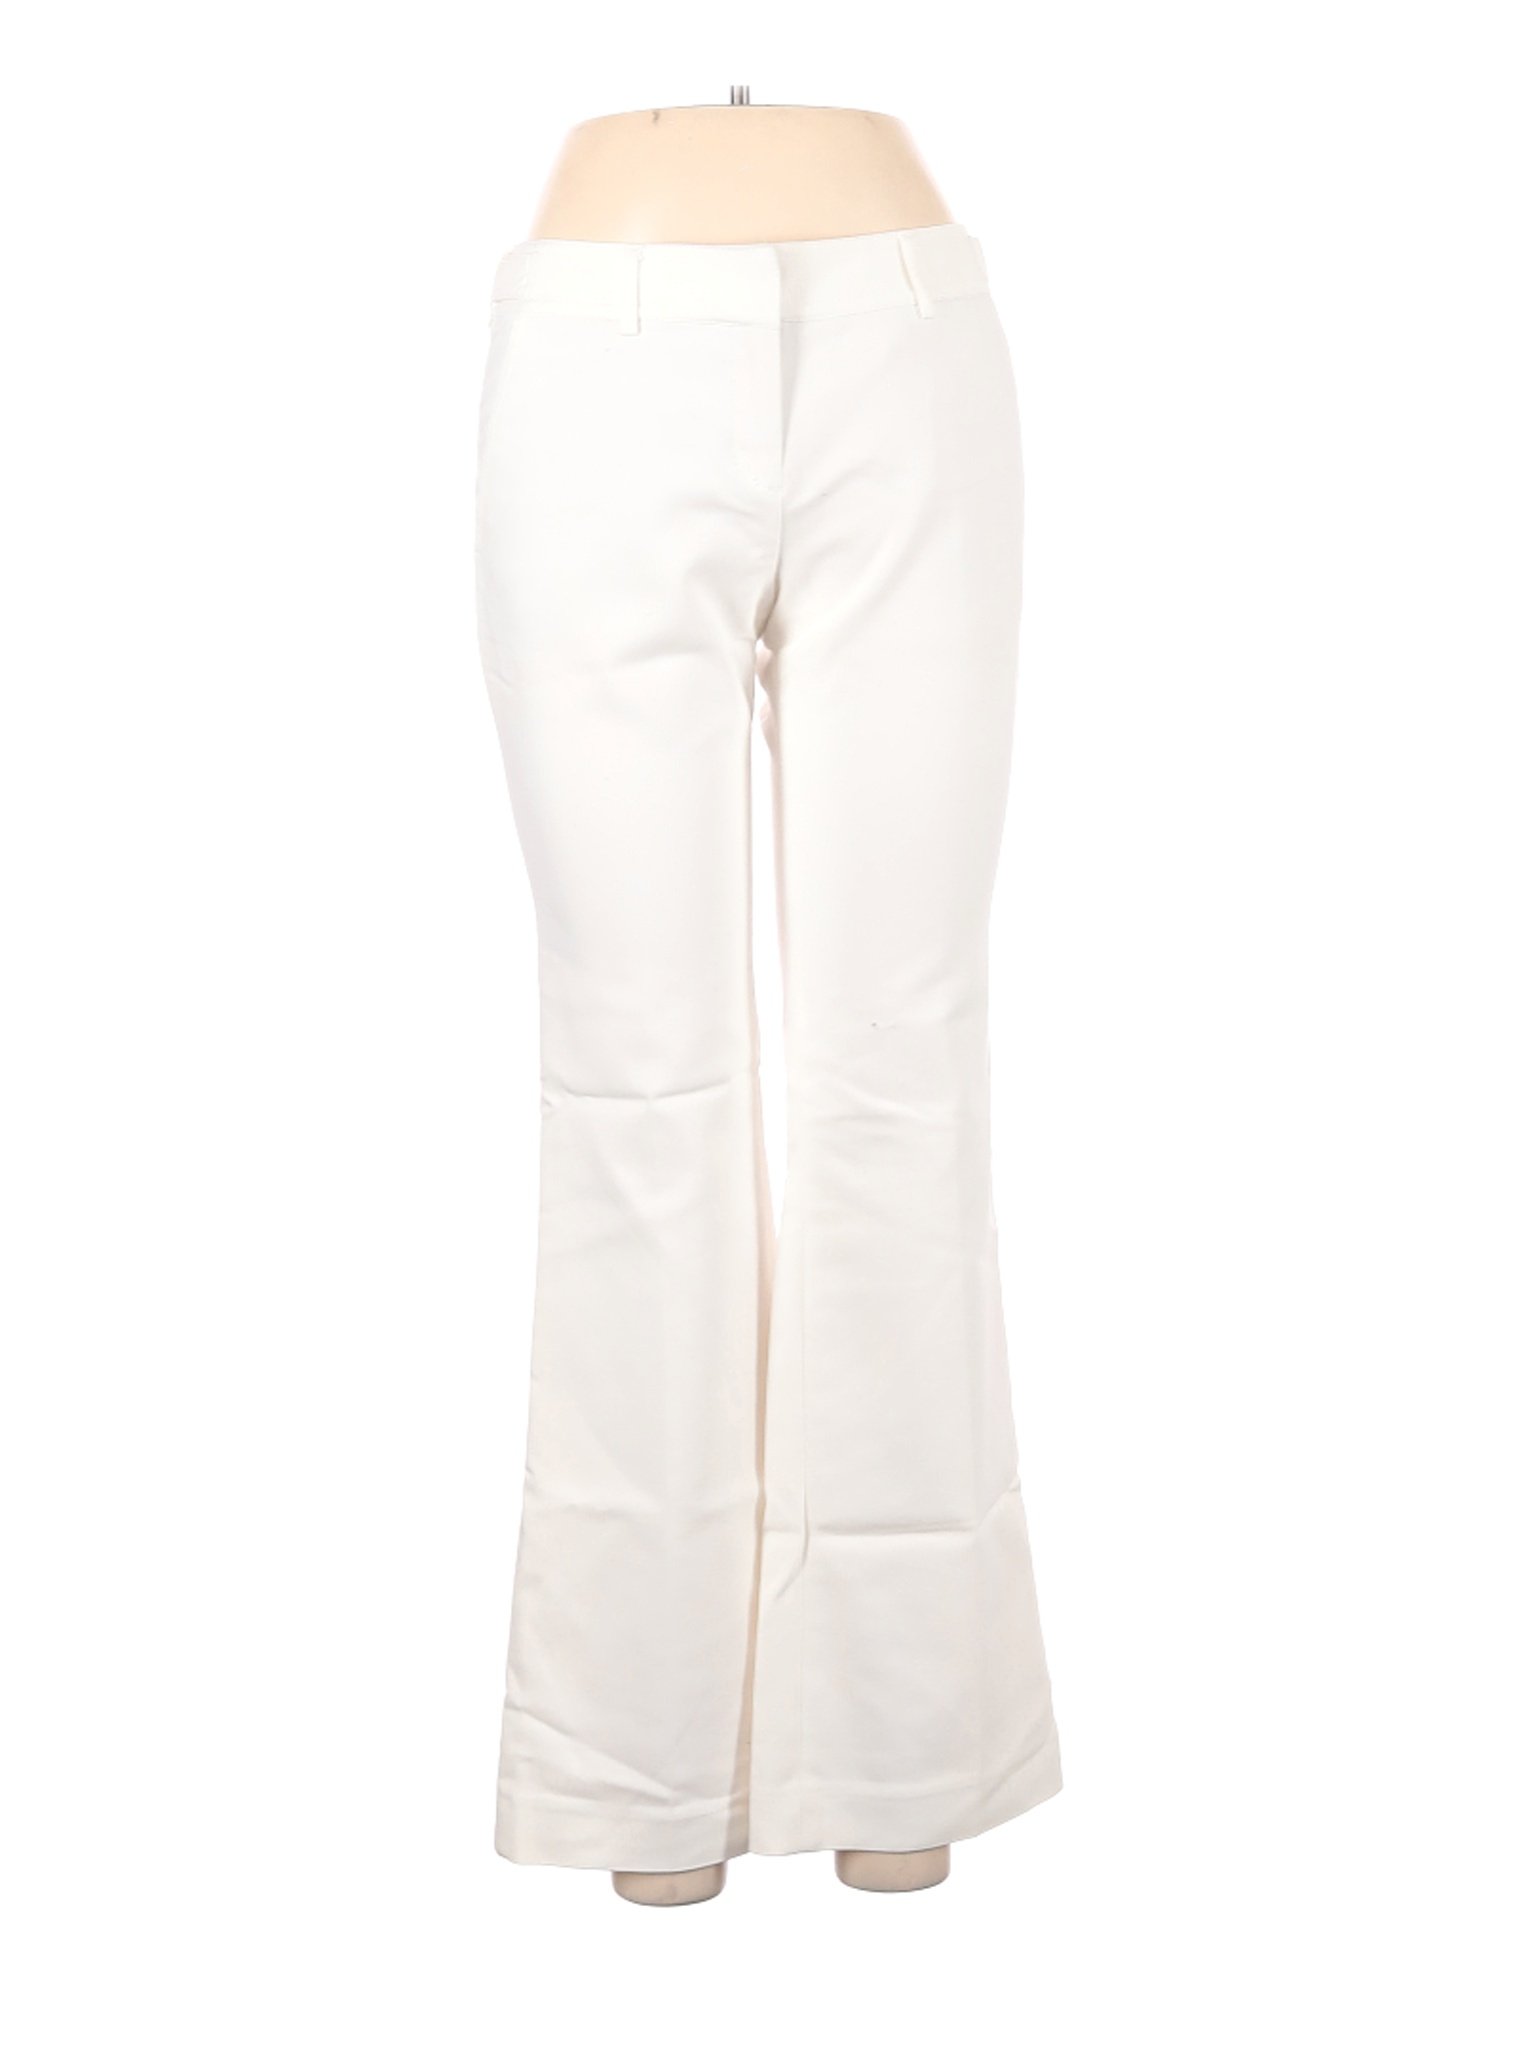 Express Women White Dress Pants 25W | eBay